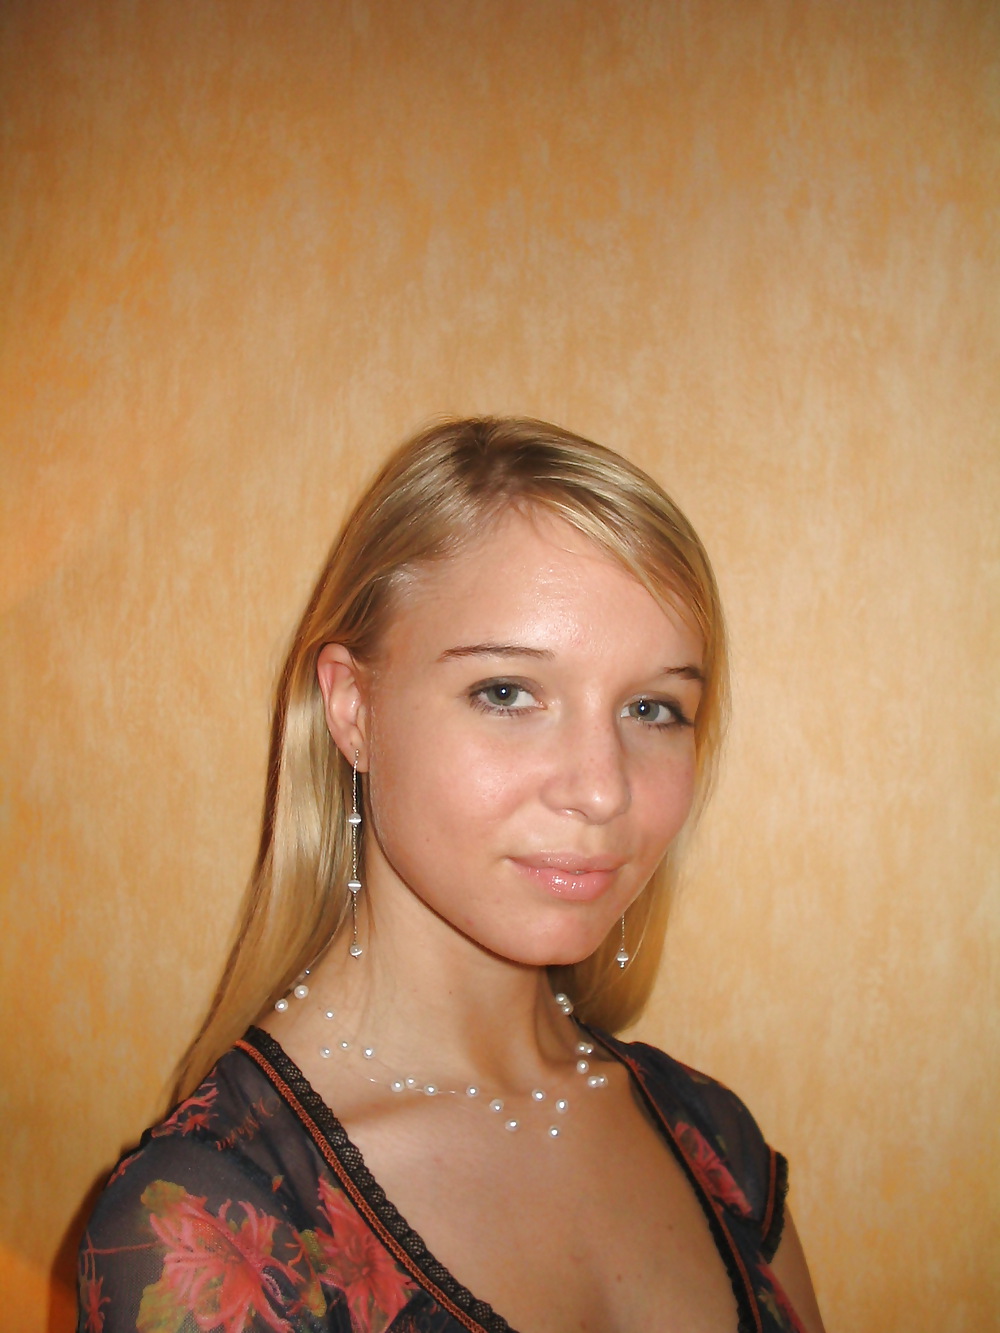 Sexy Blonde Deutsch Teenager Posiert In Dessous #24813788